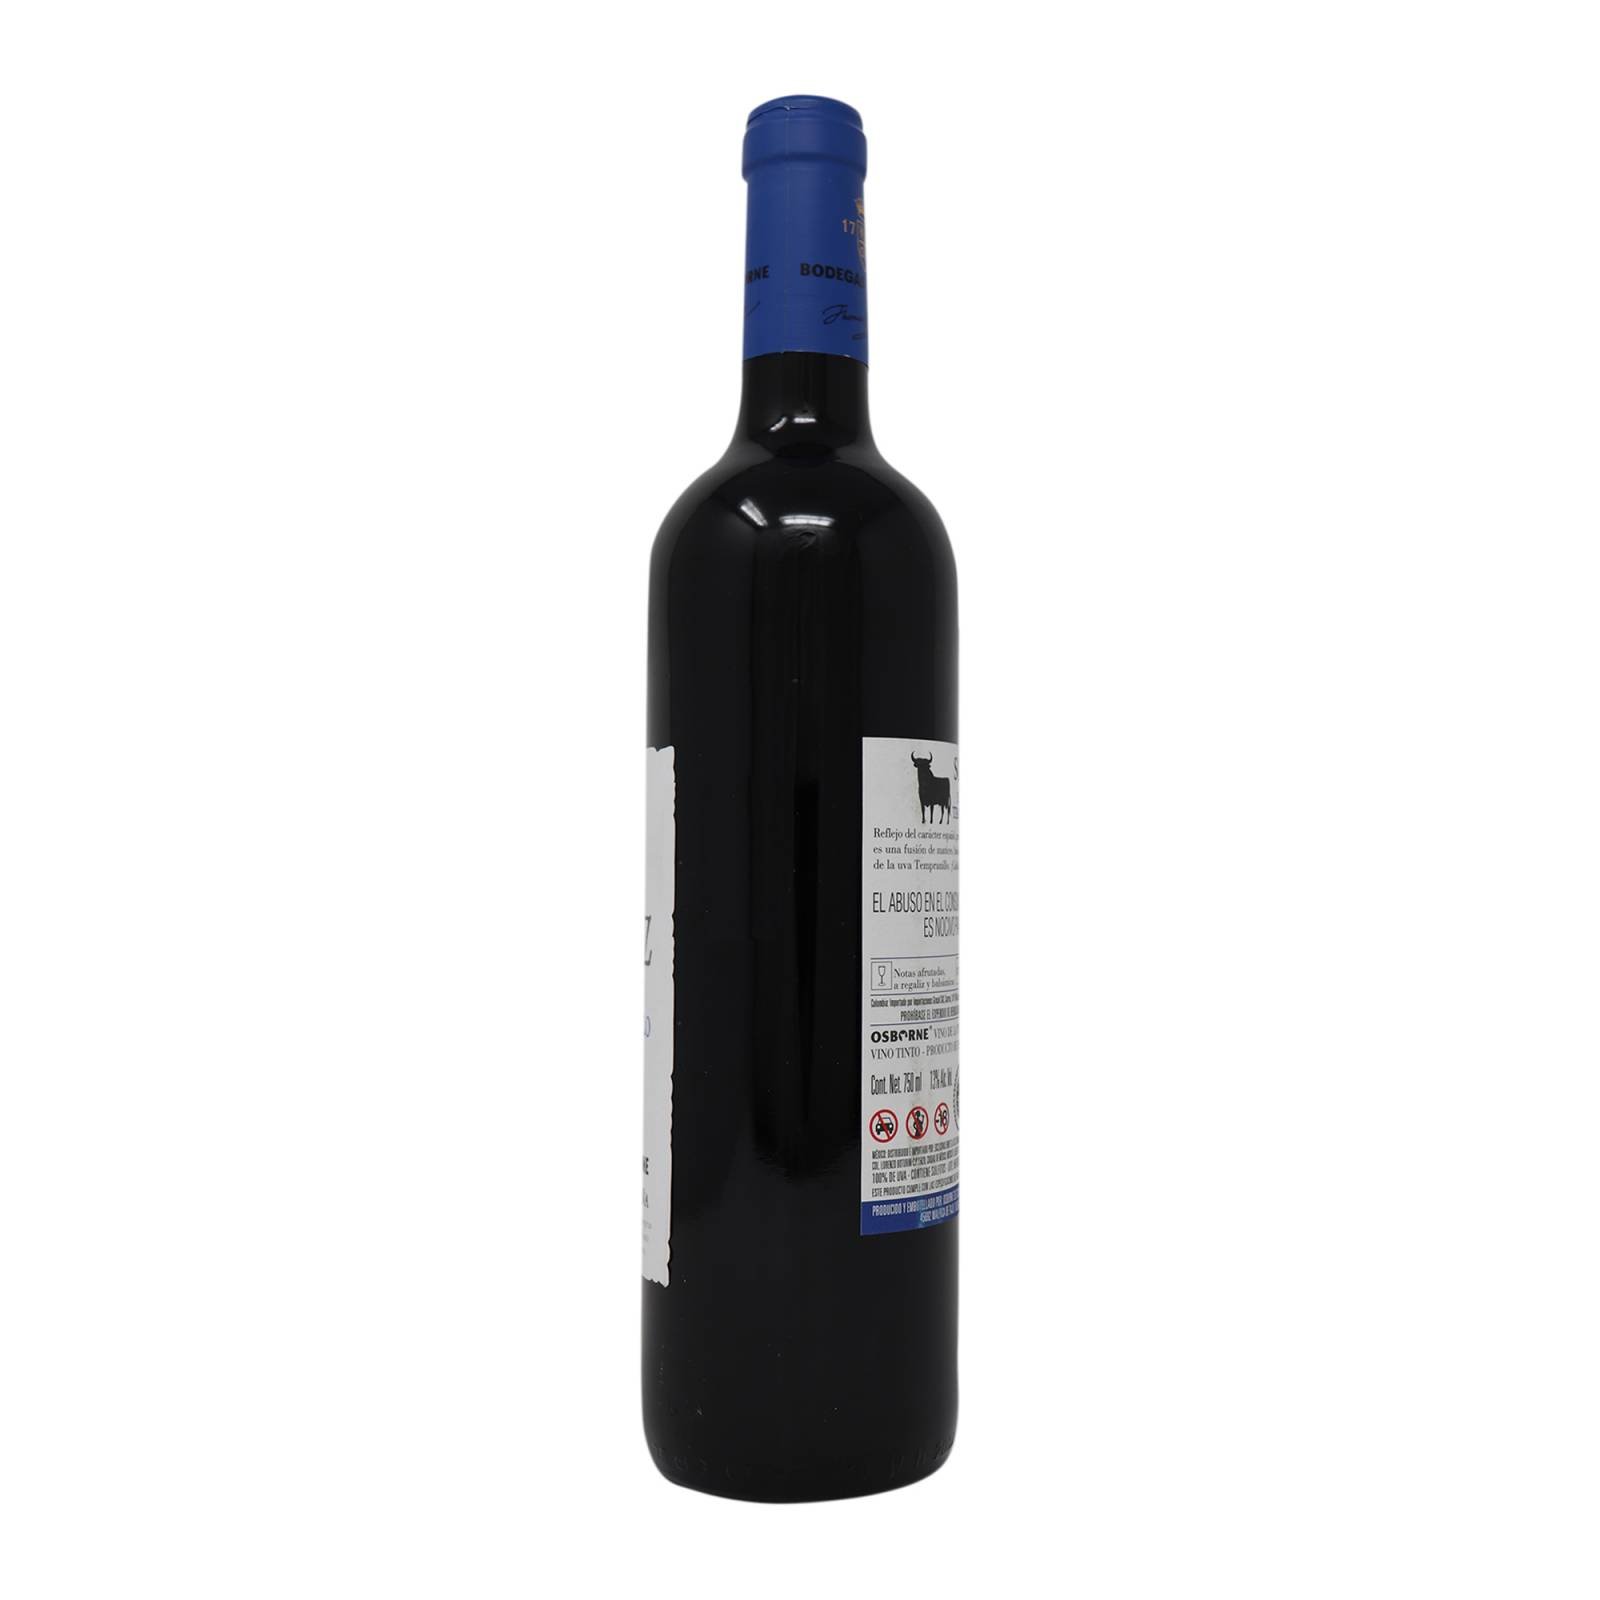 Solaz Vino Tinto Shiraz   Tempranillo 750 ml